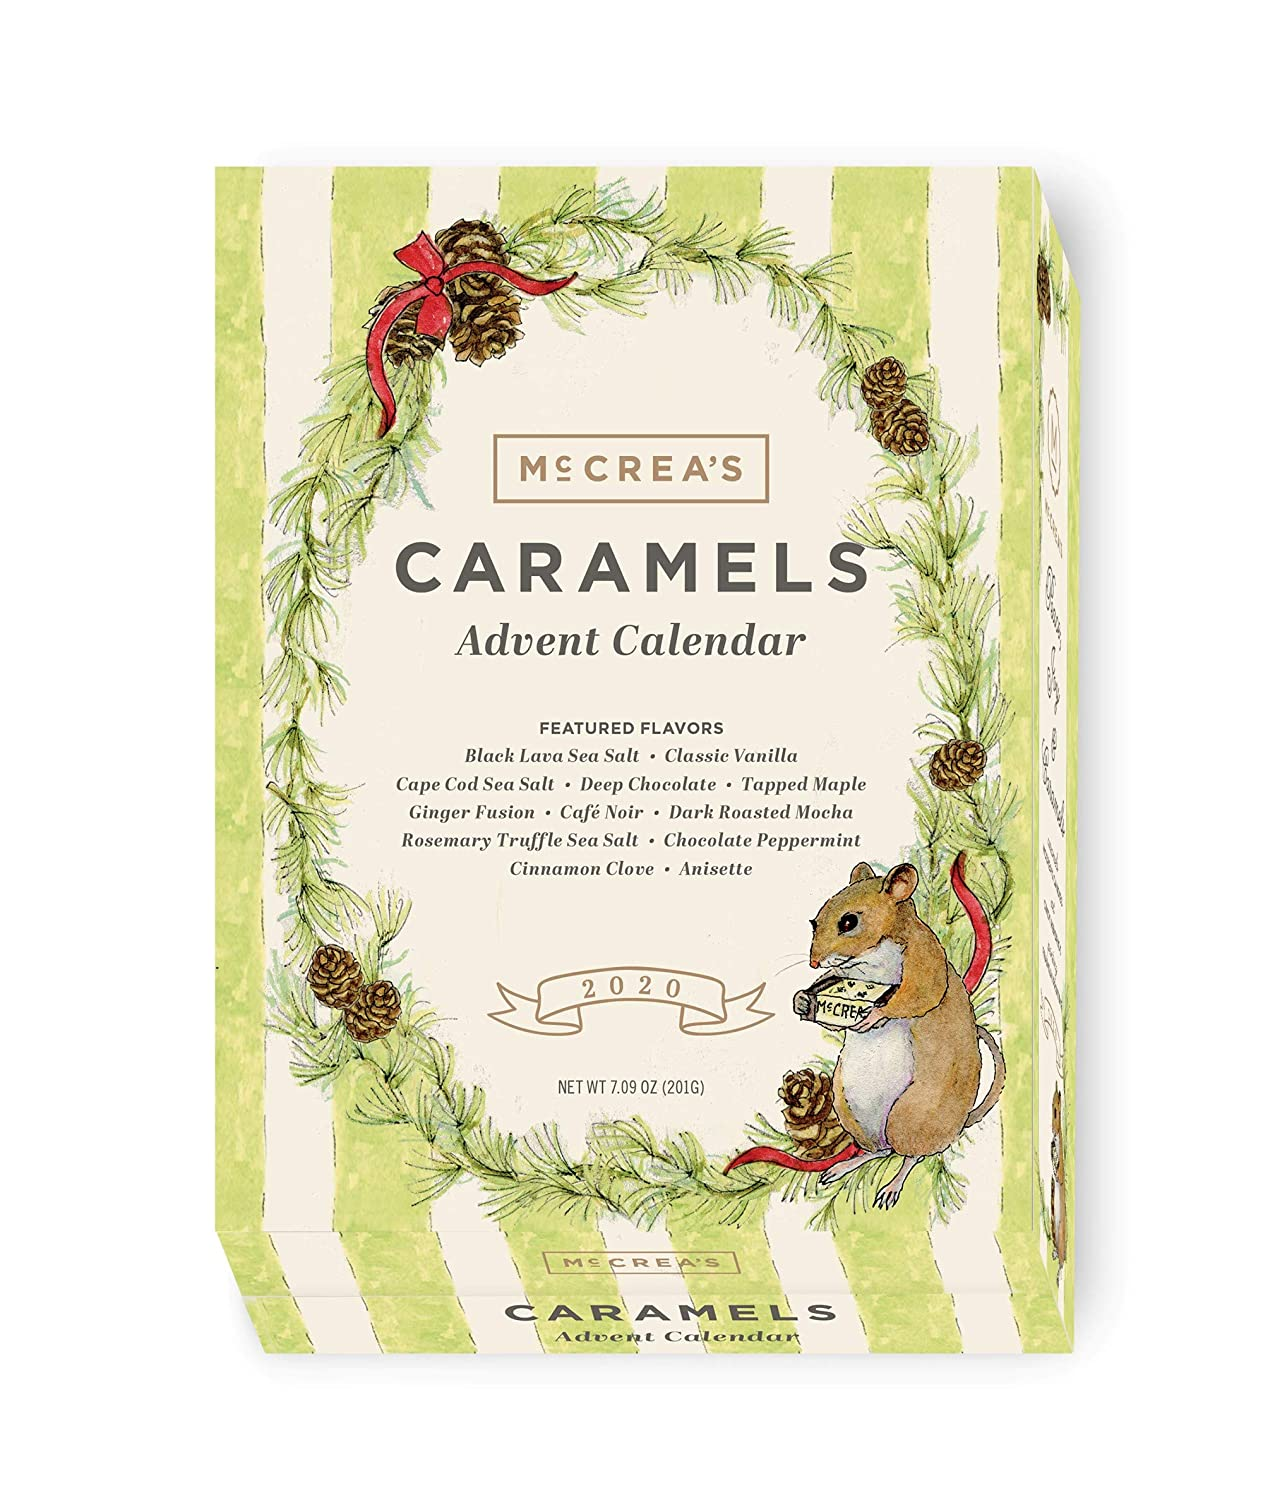 2020 McCrea's Caramel Advent Calendar Available Now! Hello Subscription